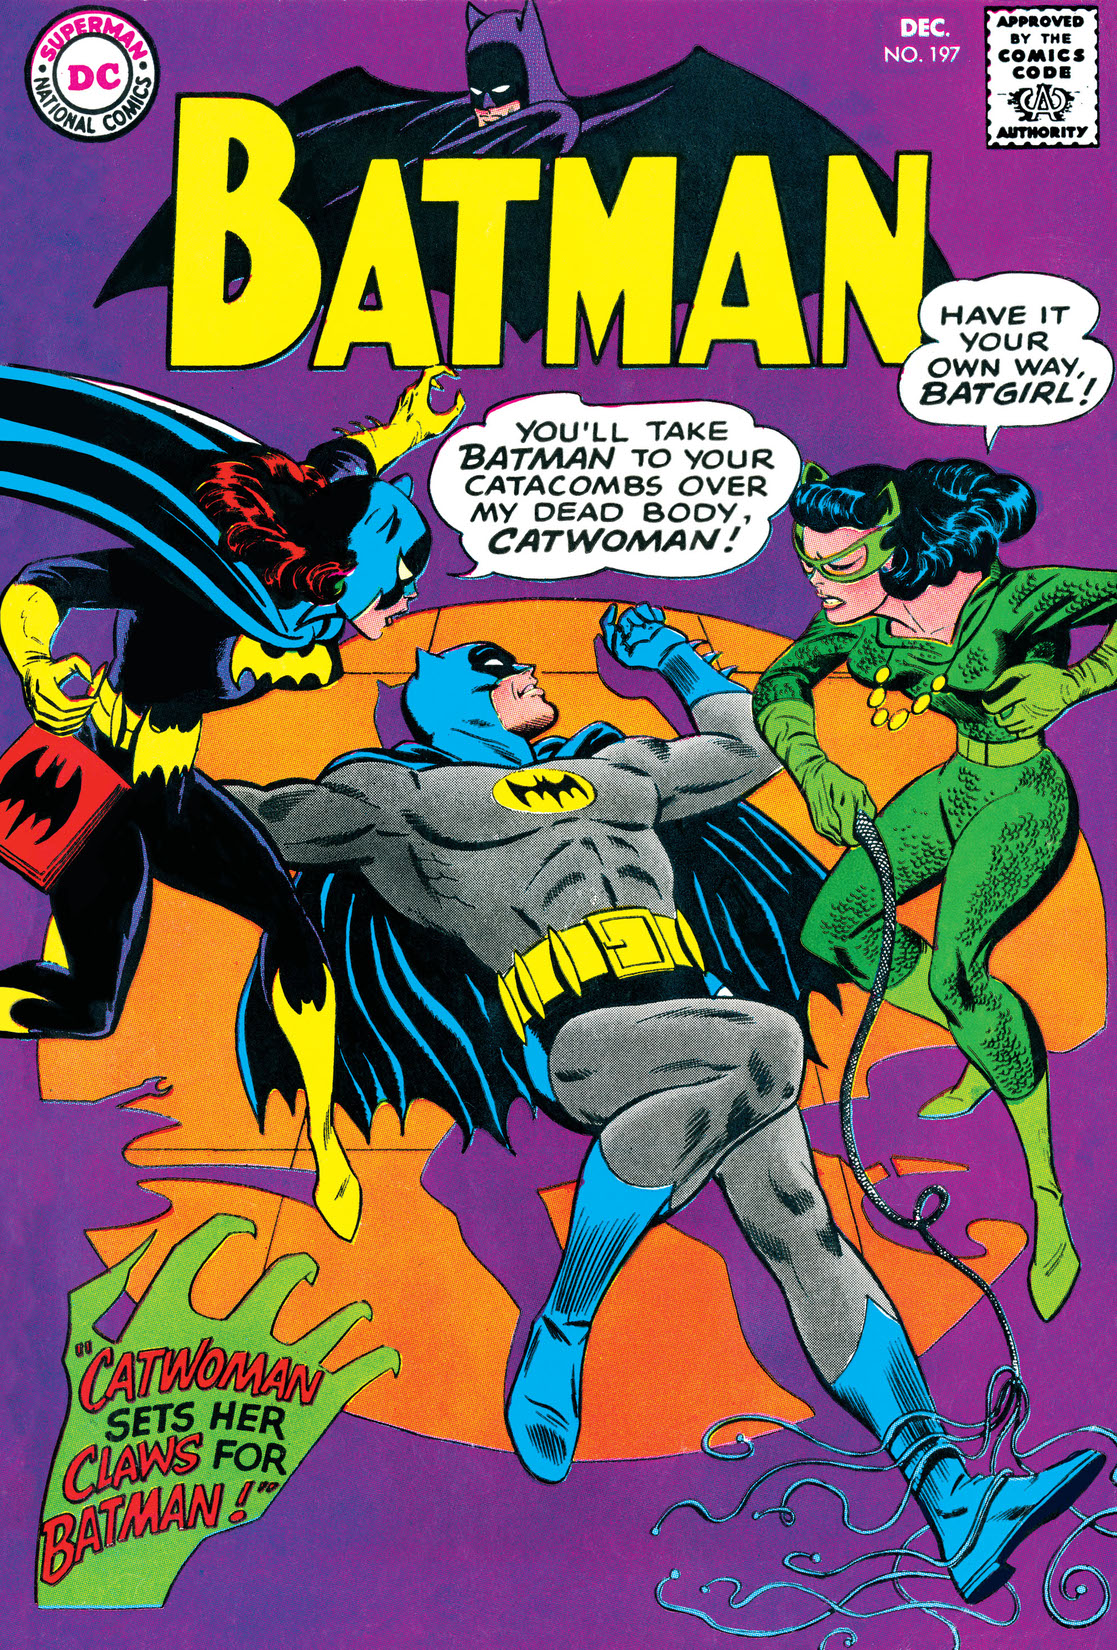 Batman (1940-) #197 preview images